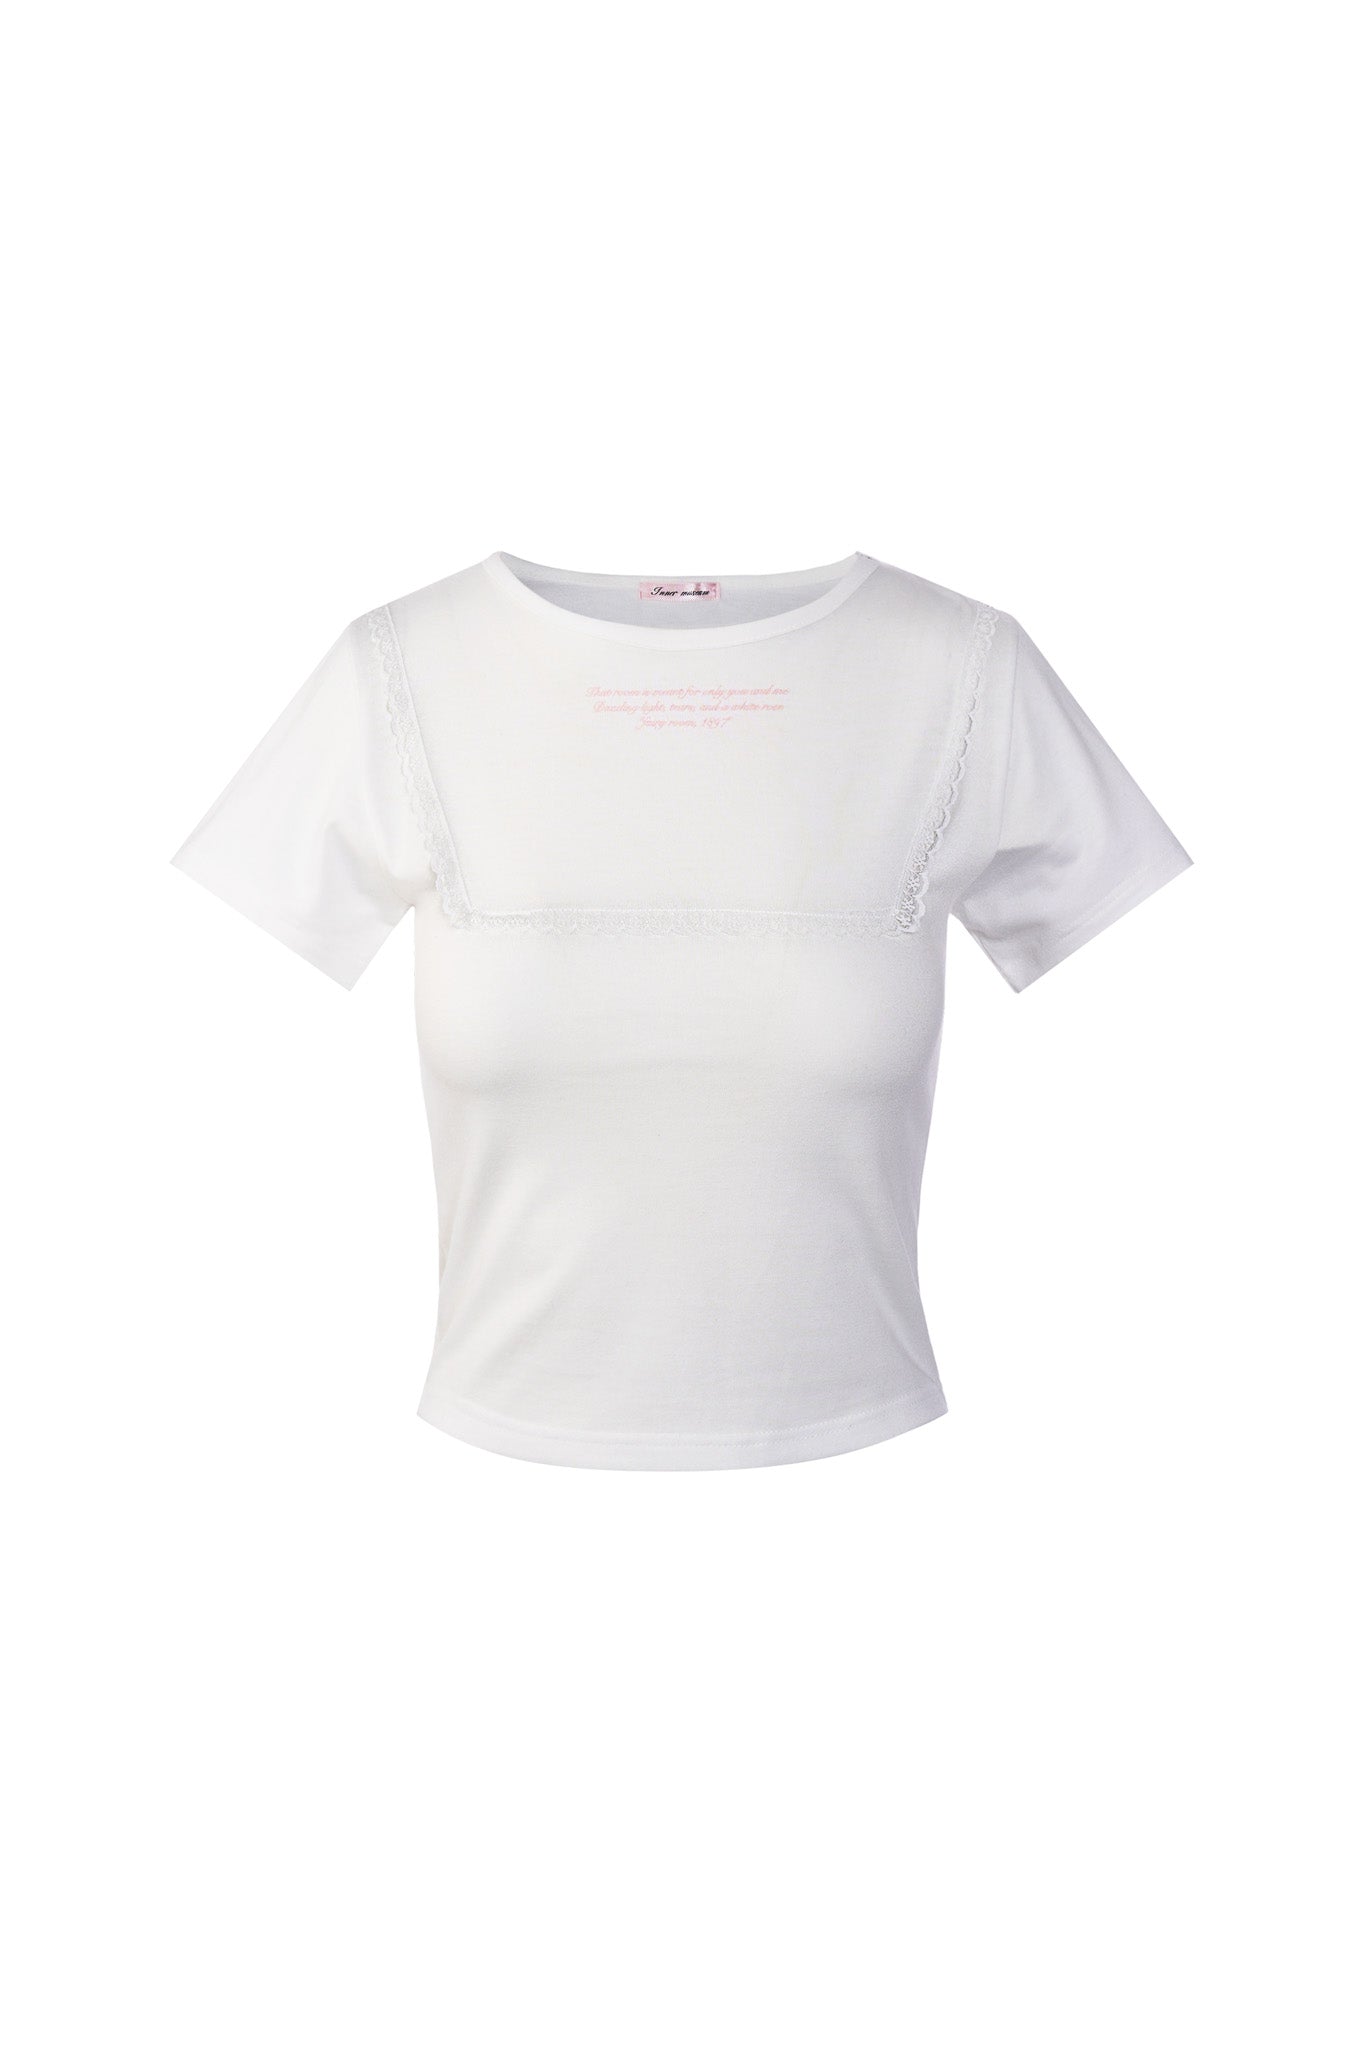 Fairy room T-shirt (WHITE)